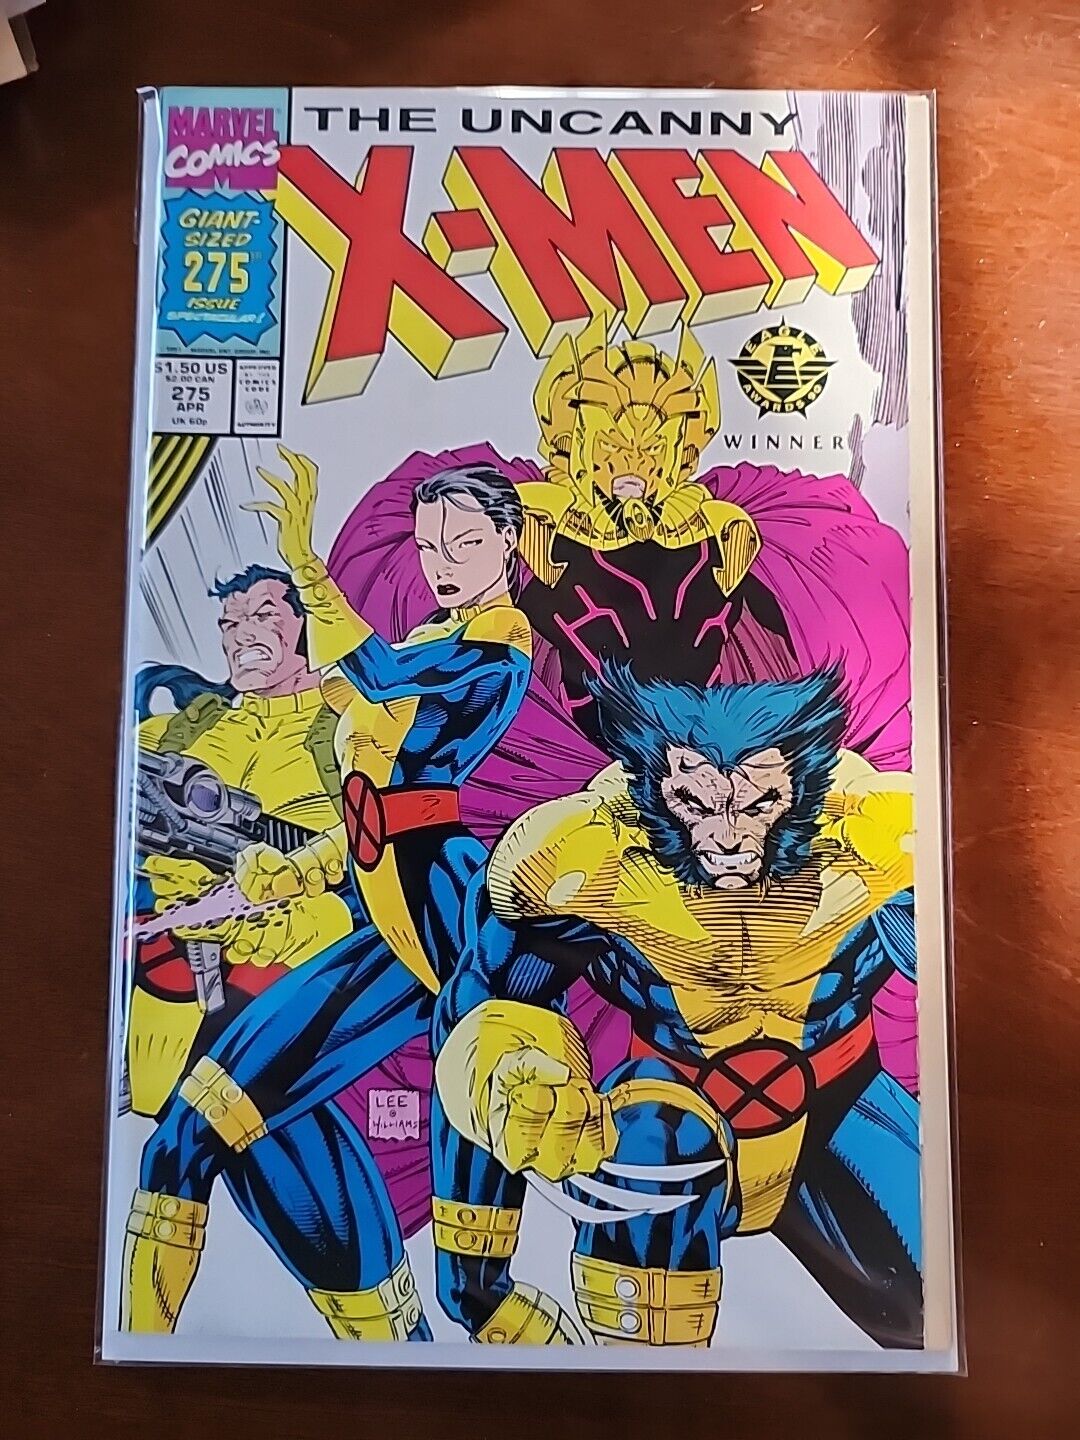 The Uncanny X-Men #275 (Marvel Comics April 1991)